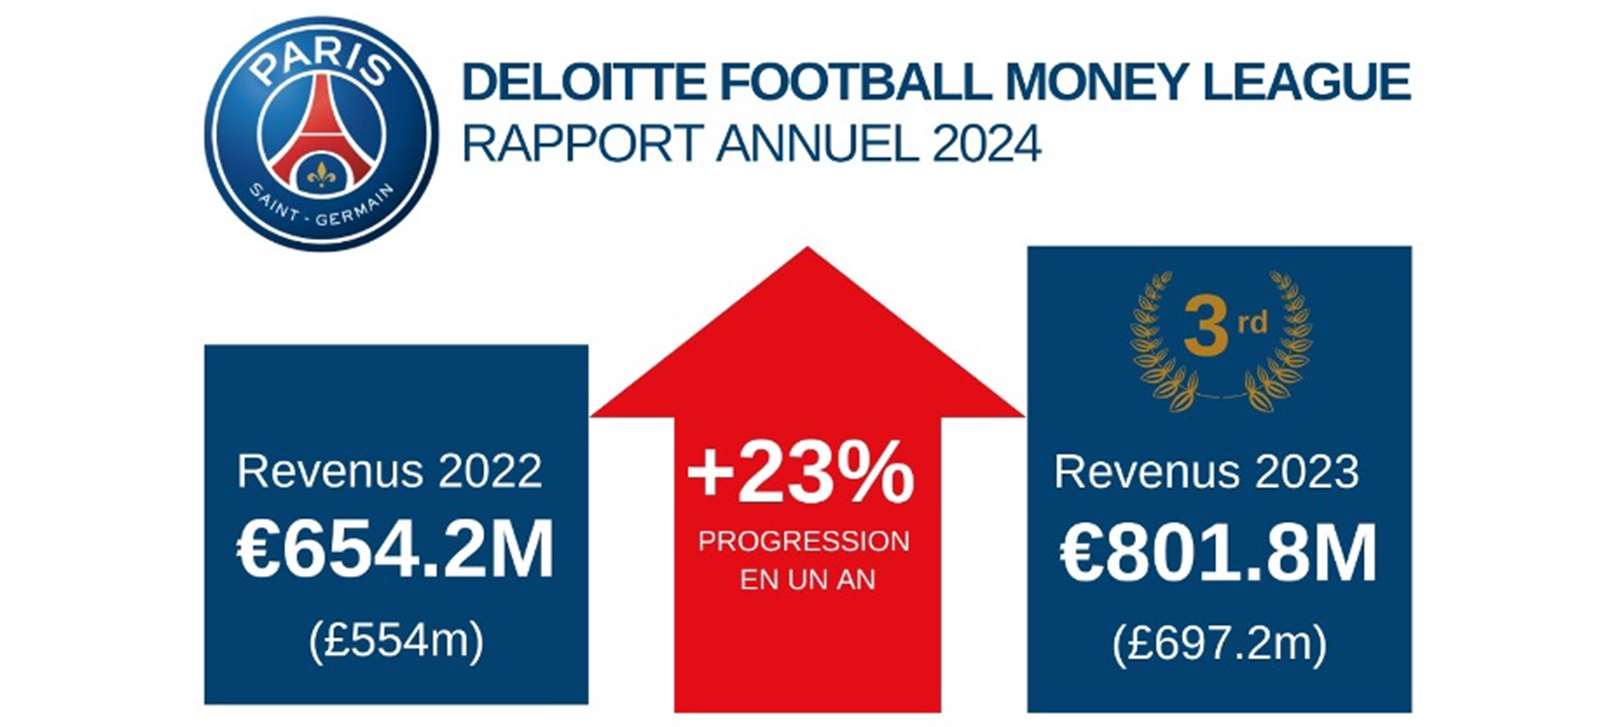 2022-2023시즌 구단 역대 최고 매출을 달성한 PSG, 2023-2024시즌은 이를 넘어설 것으로 기대를 모으고 있다. PSG